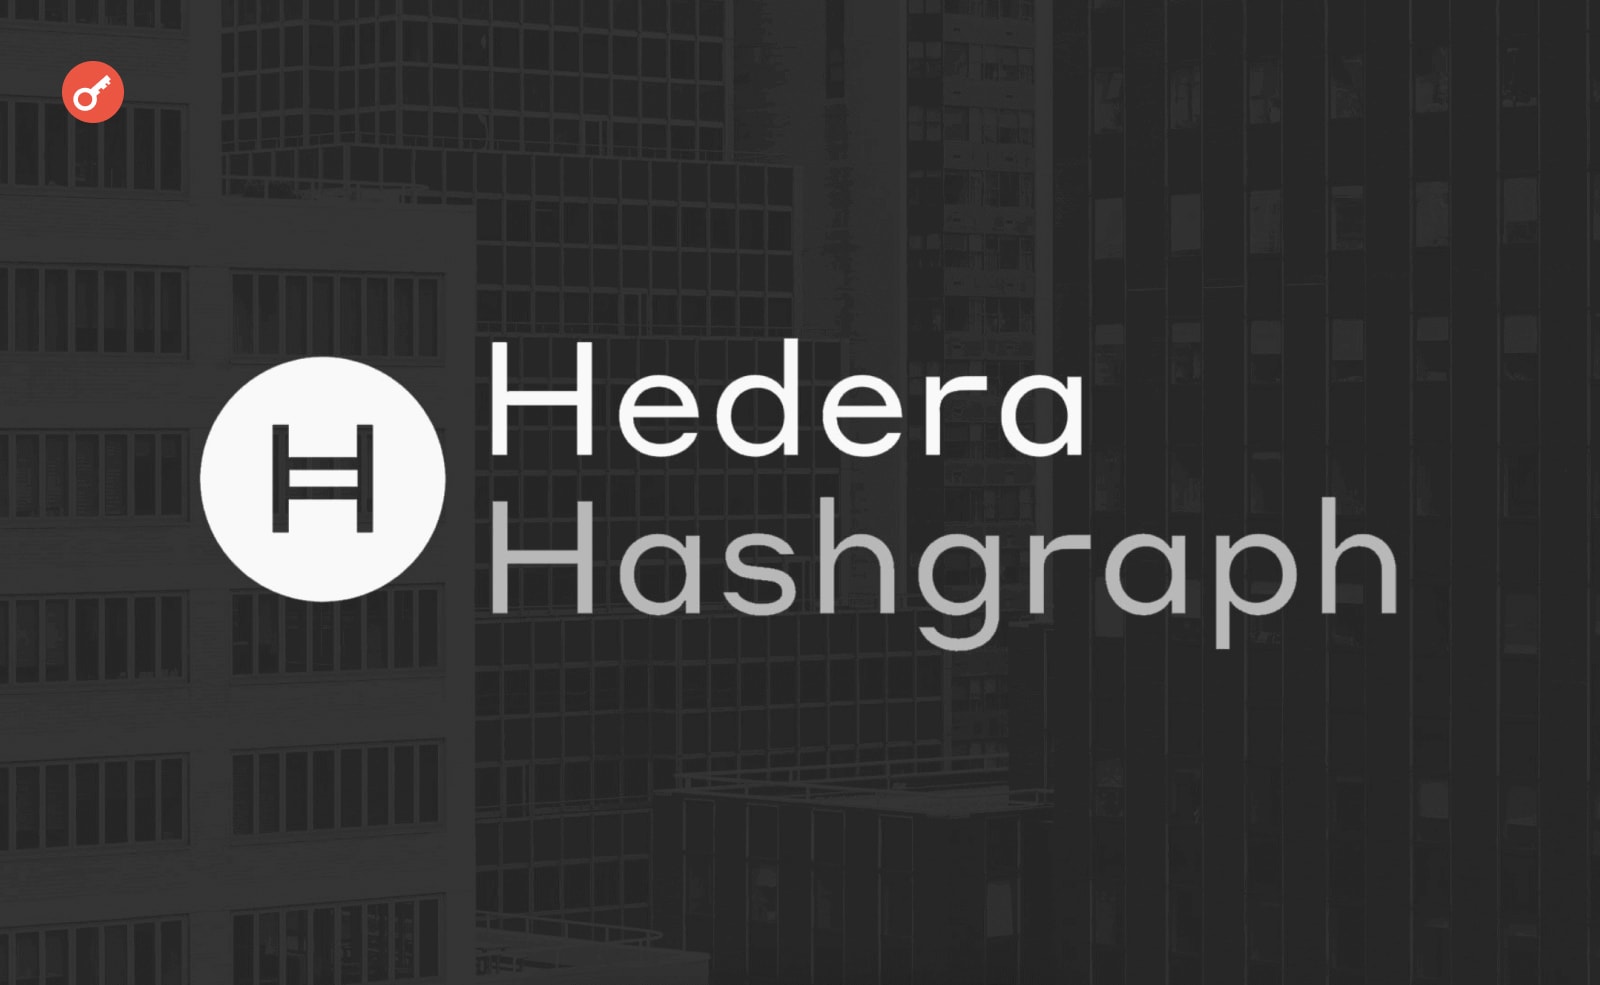 В Hedera заблокировали доступ к кошельку и фирменному приложению. Заглавный коллаж новости.